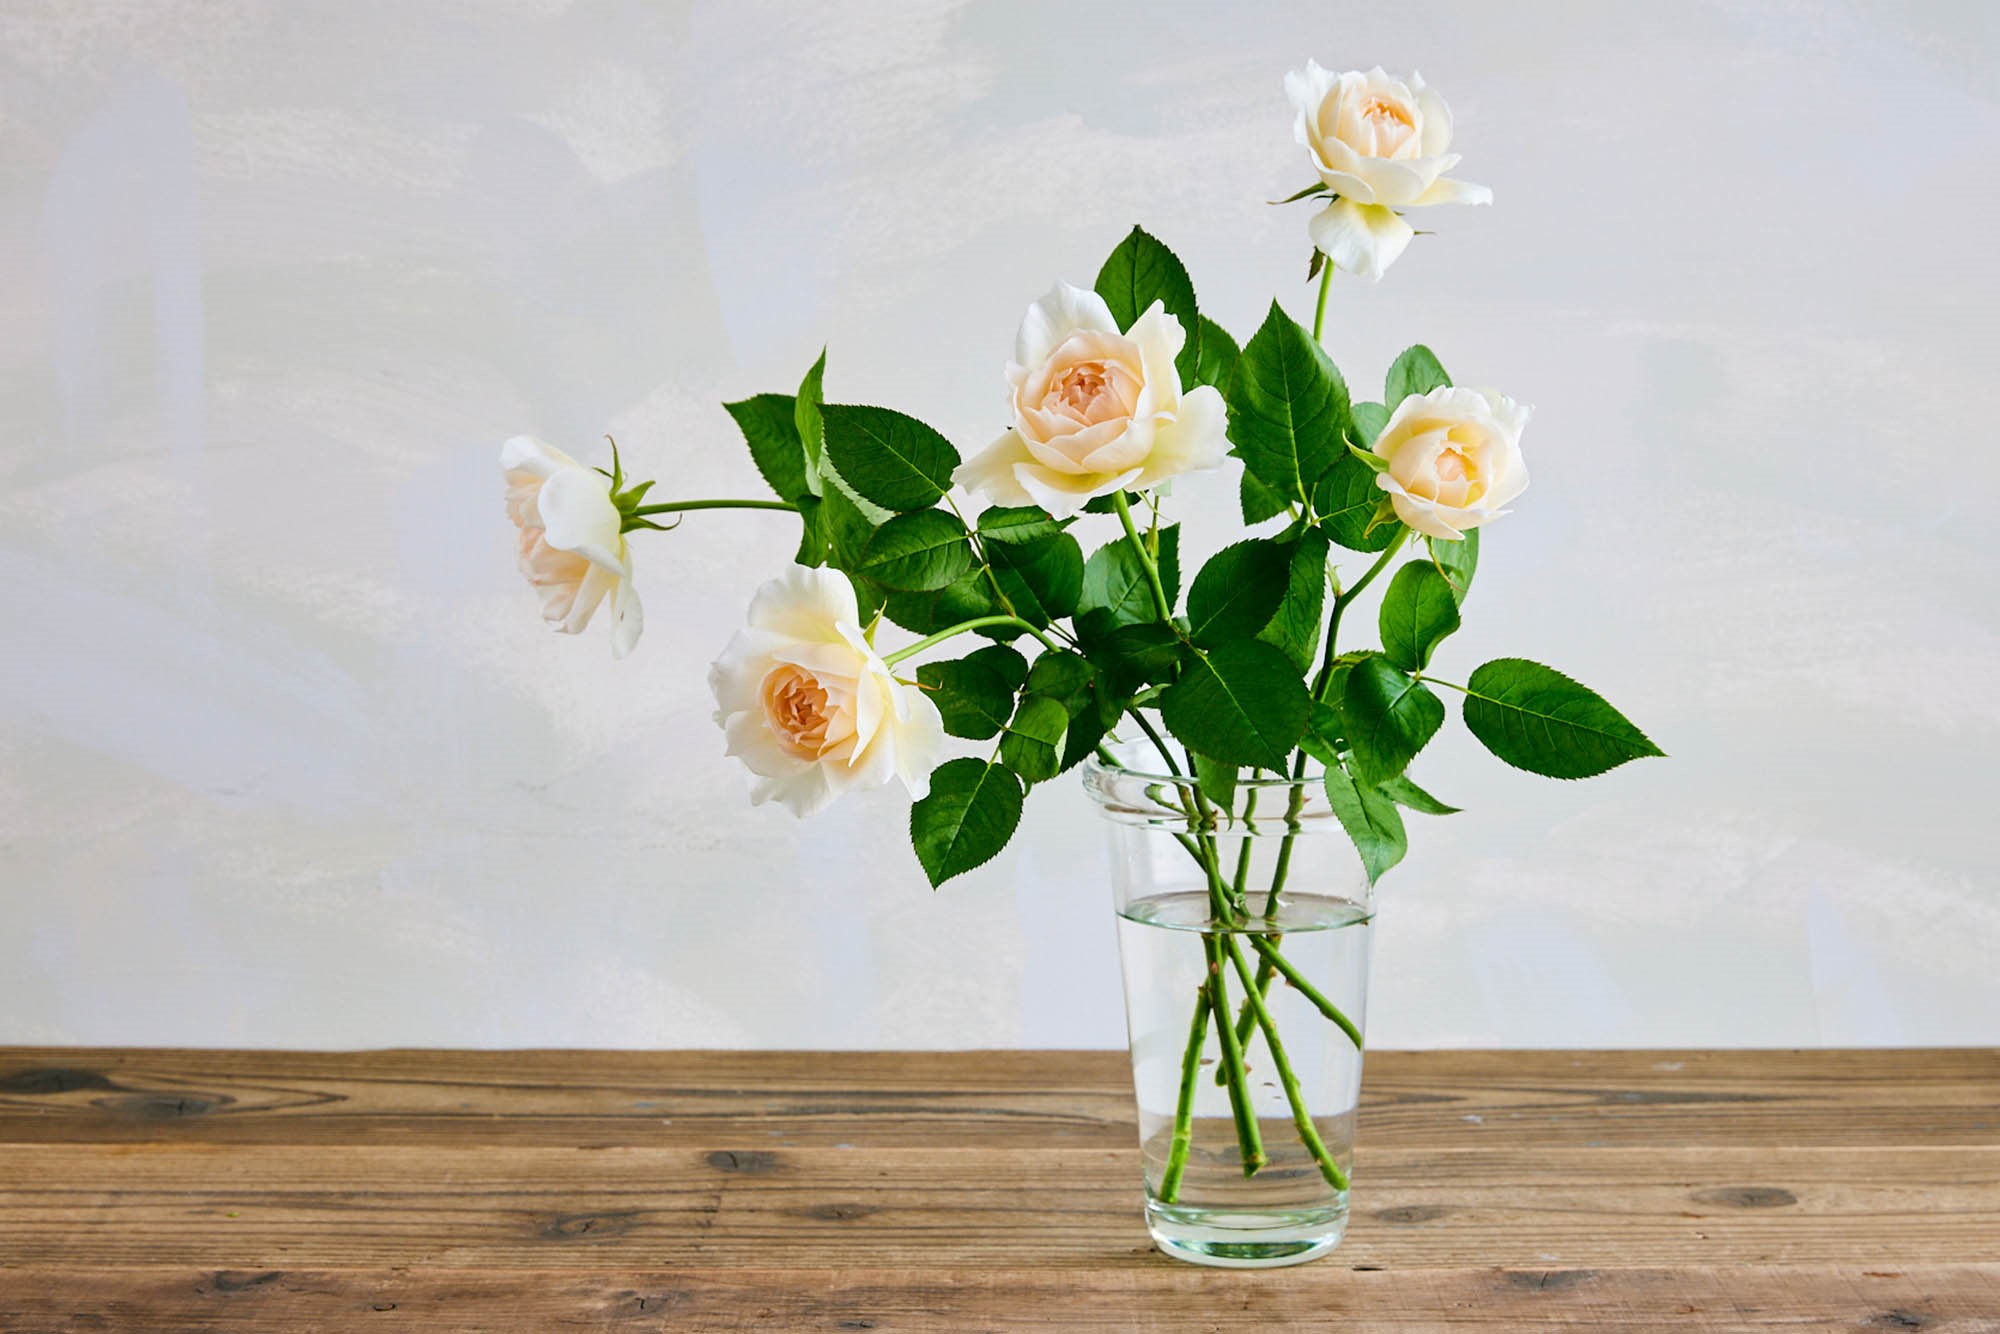 自然のままに咲き進む姿と芳しい香りが楽しめる 青山フラワーマーケットのオリジナルローズ Number5 が誕生 青山フラワーマーケット公式 花屋 花 花束 フラワーギフト 通販